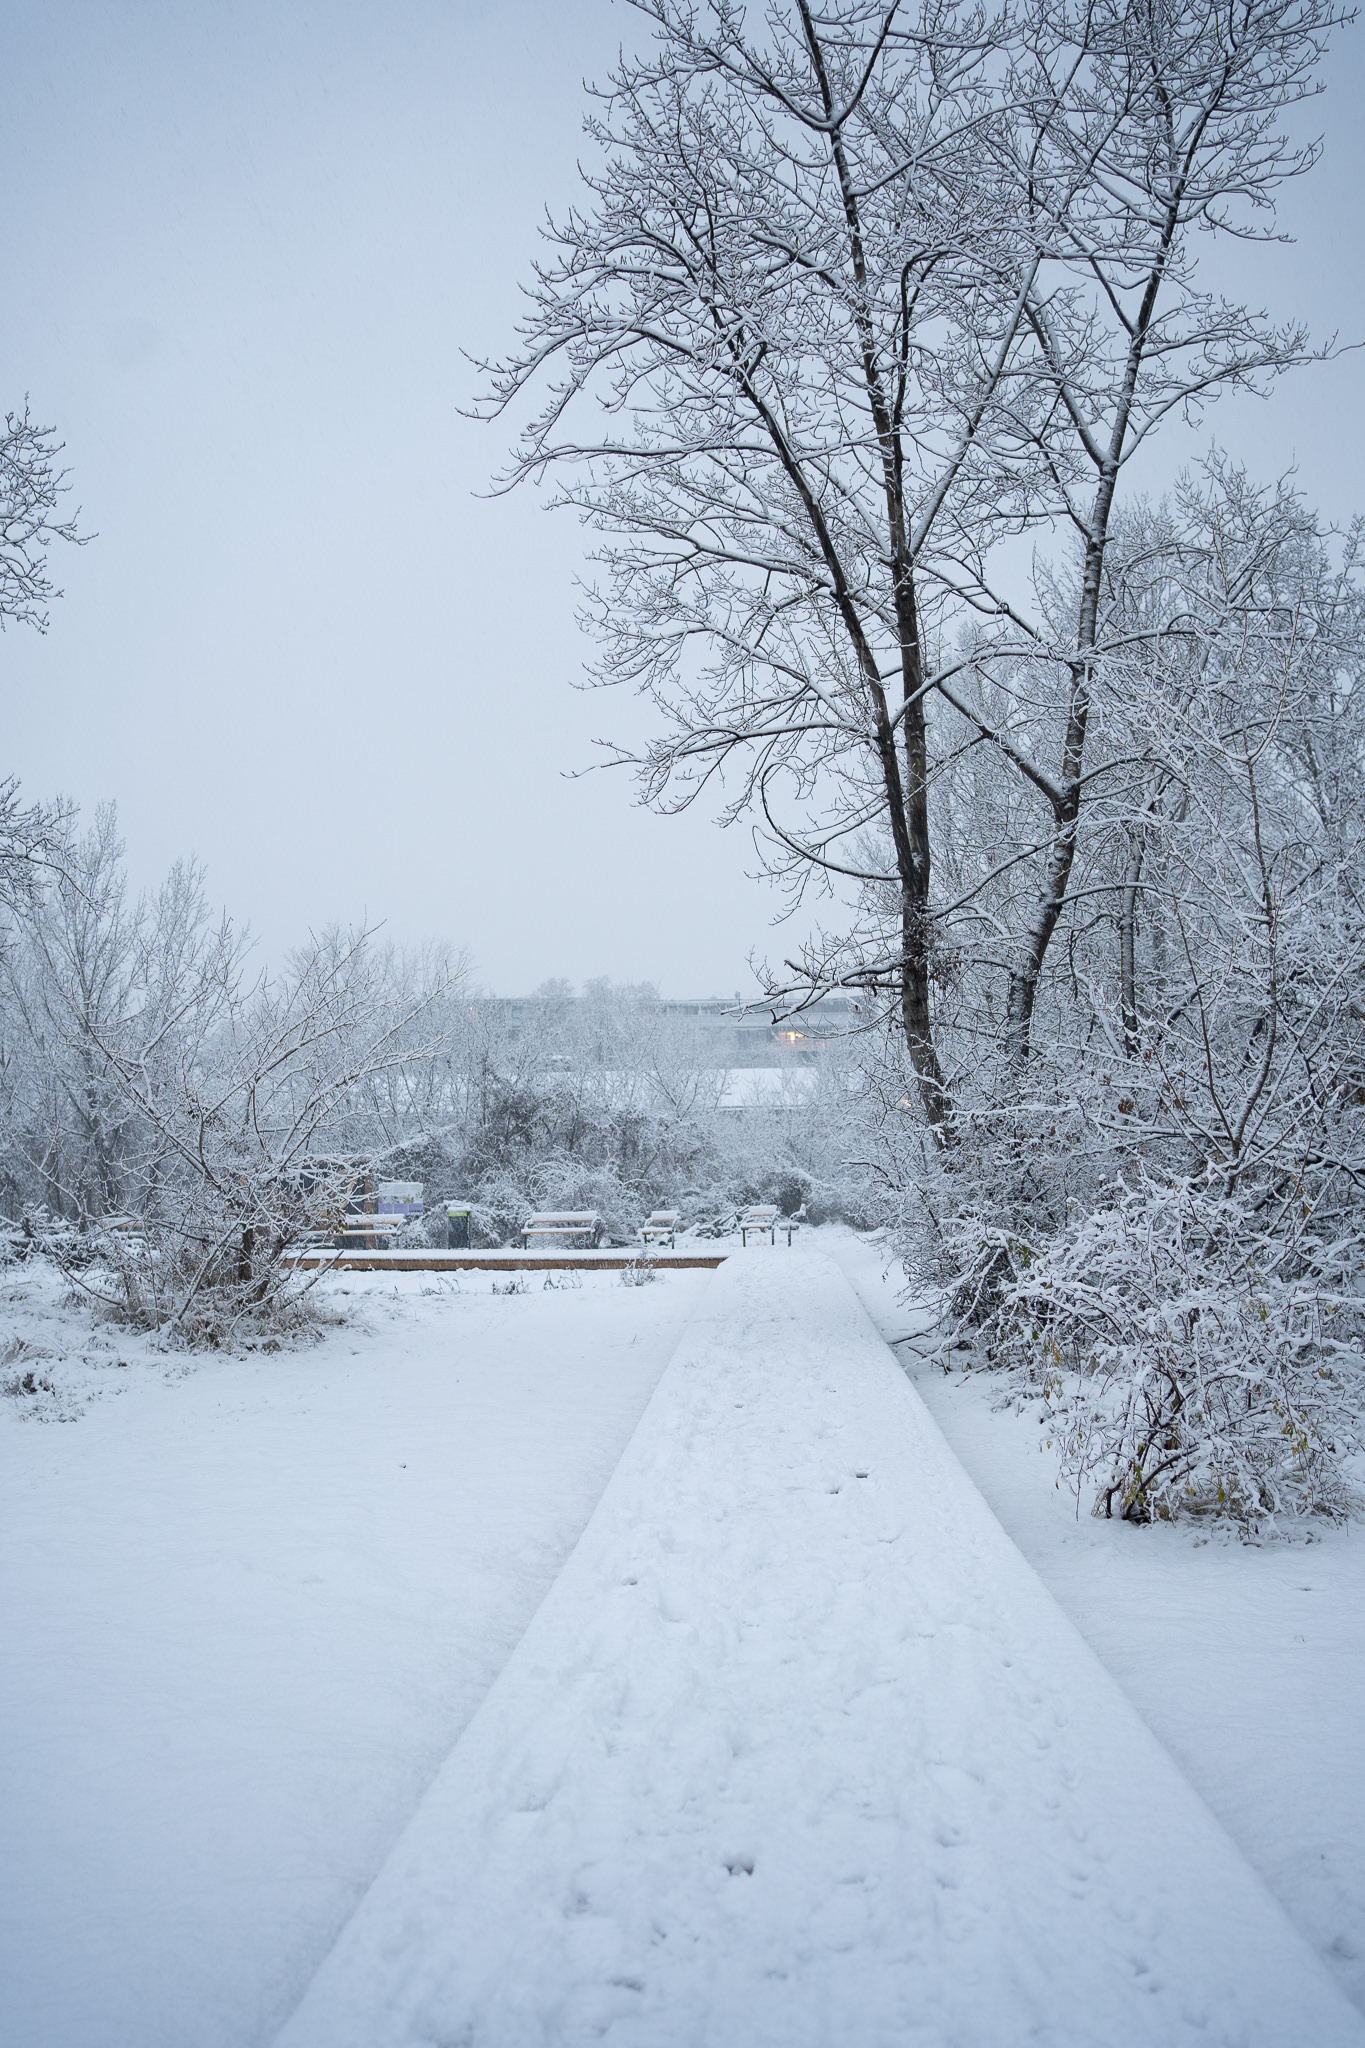 "Grätzl im Wandel" - Freie Mitte covered in Snow